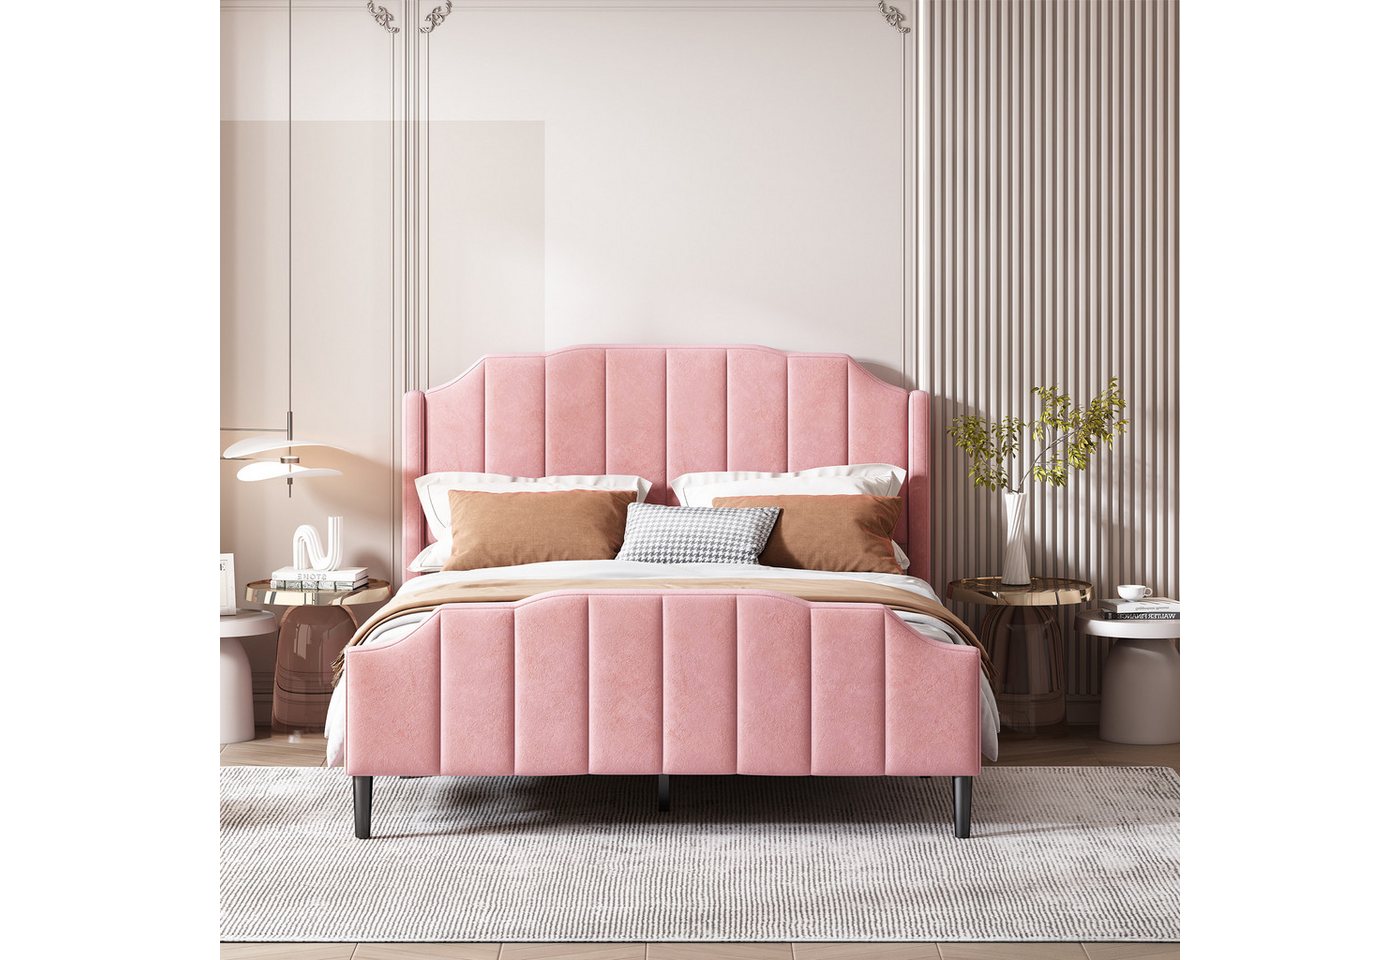 IDEASY Polsterbett Doppelbett, Jugendbett, Gästebett, 140 x 200 cm, Samt gepolstert, rosa/grau/beige, einfache Montage von IDEASY